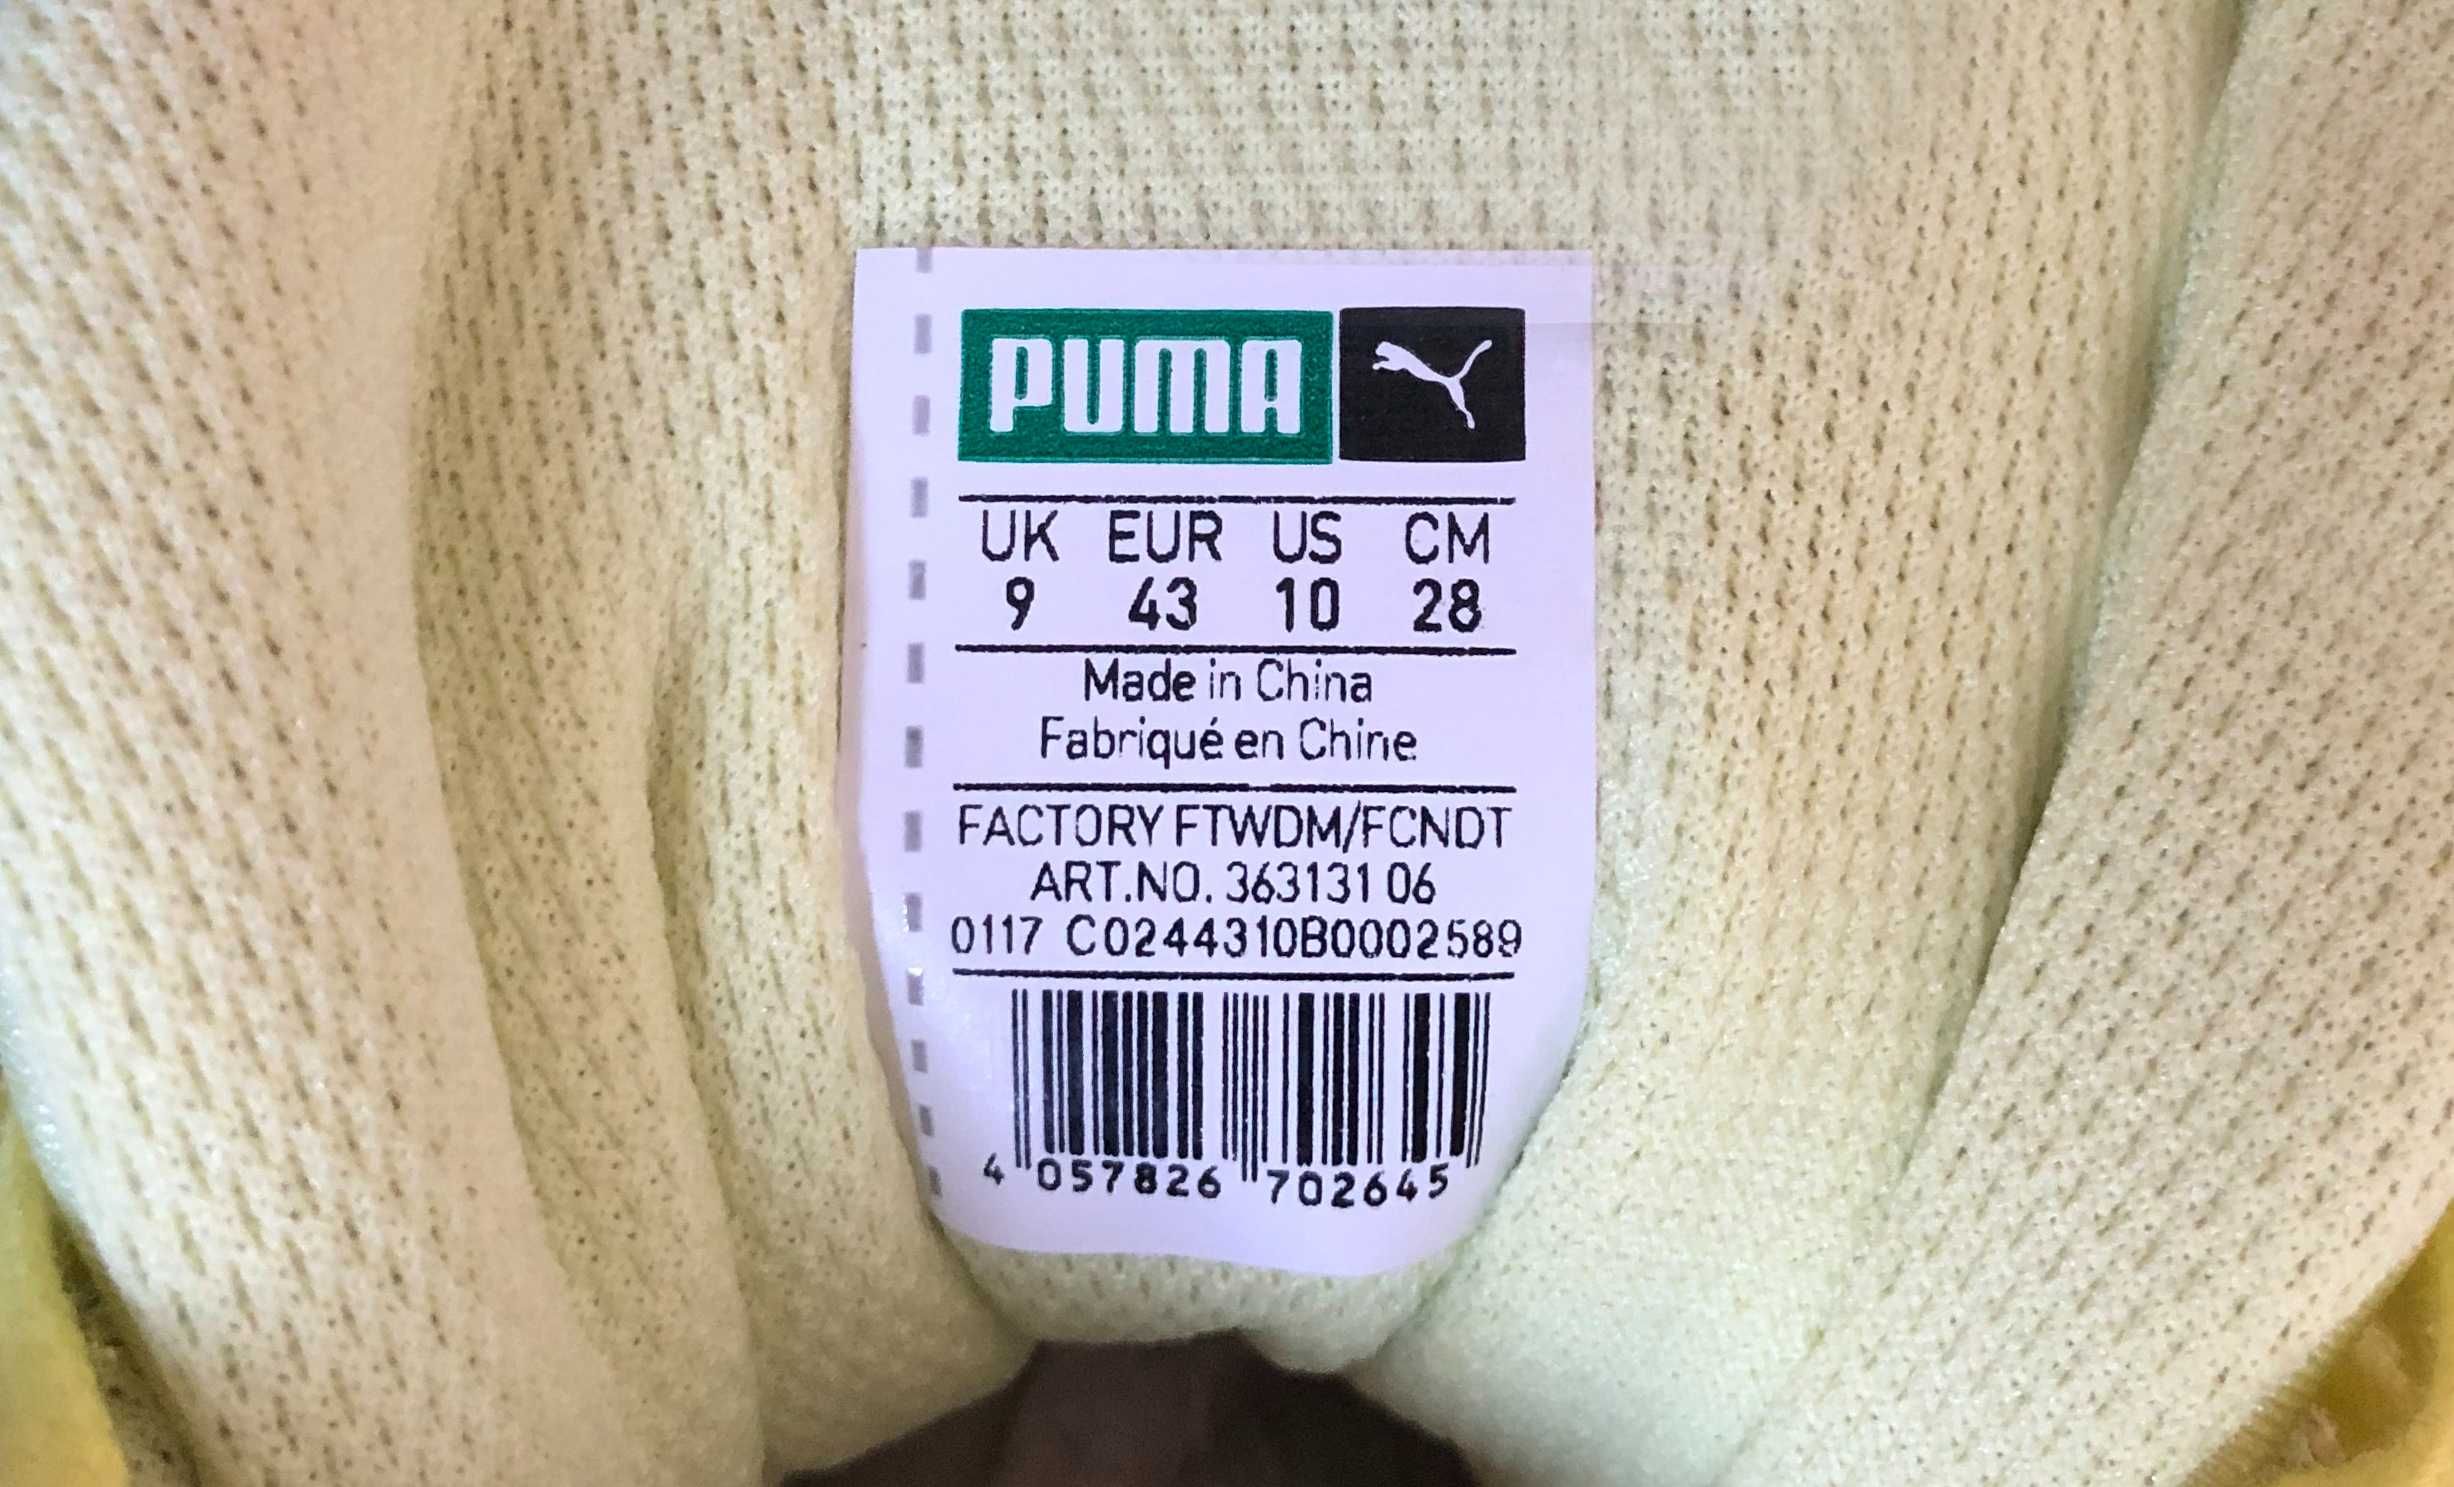 Чоловічі кросівки Puma Prevail Soft Fluo Yellow, оригінал, (р. 42,5)